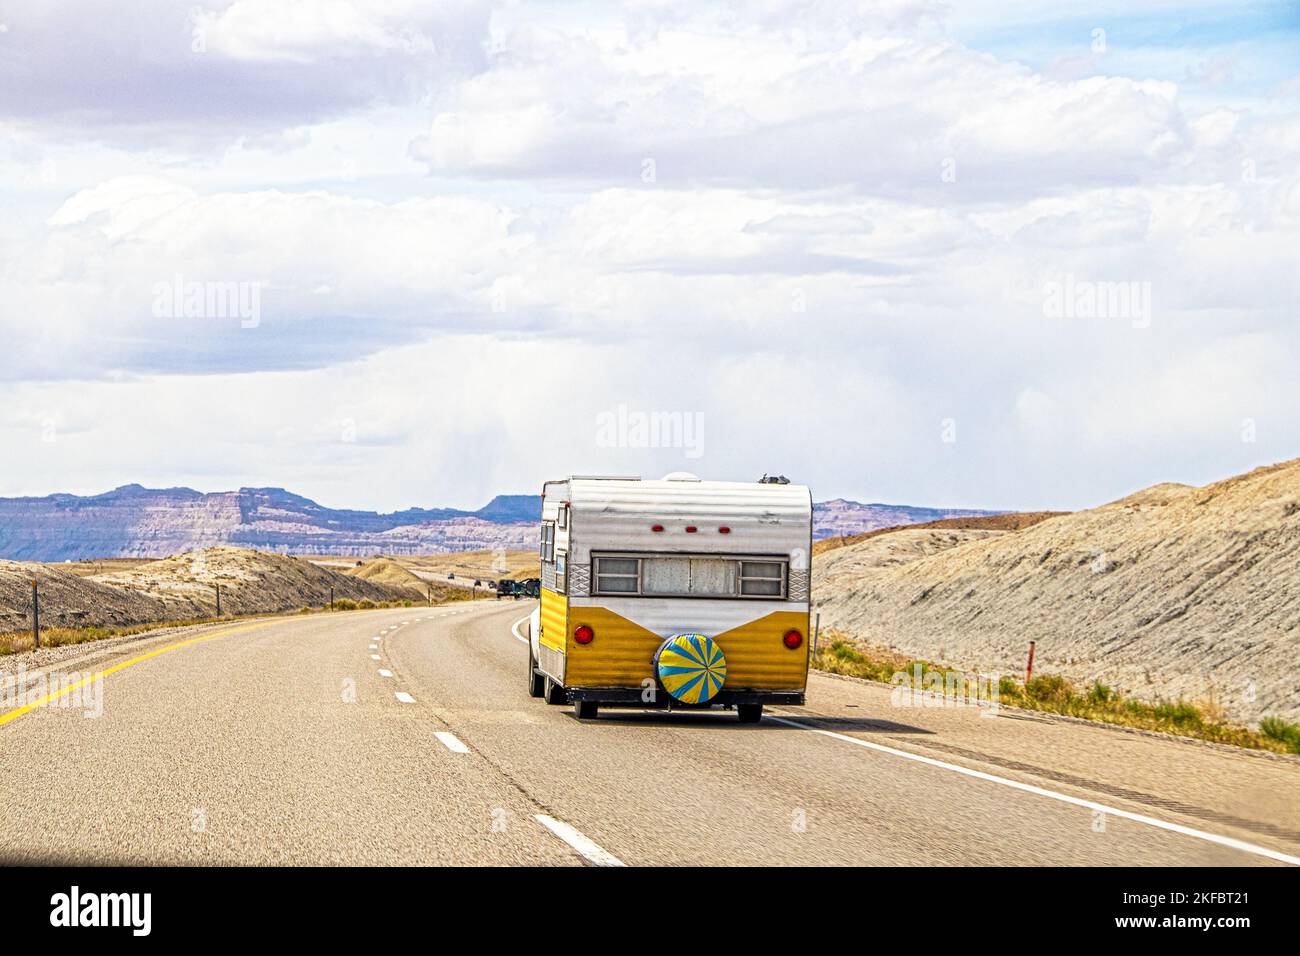 Une fourgonnette rétro jaune et blanche part en voiture dans la région des badlands de l'Utah, près du parc national d'Arches, avec départ dessert sur une route à deux voies Banque D'Images